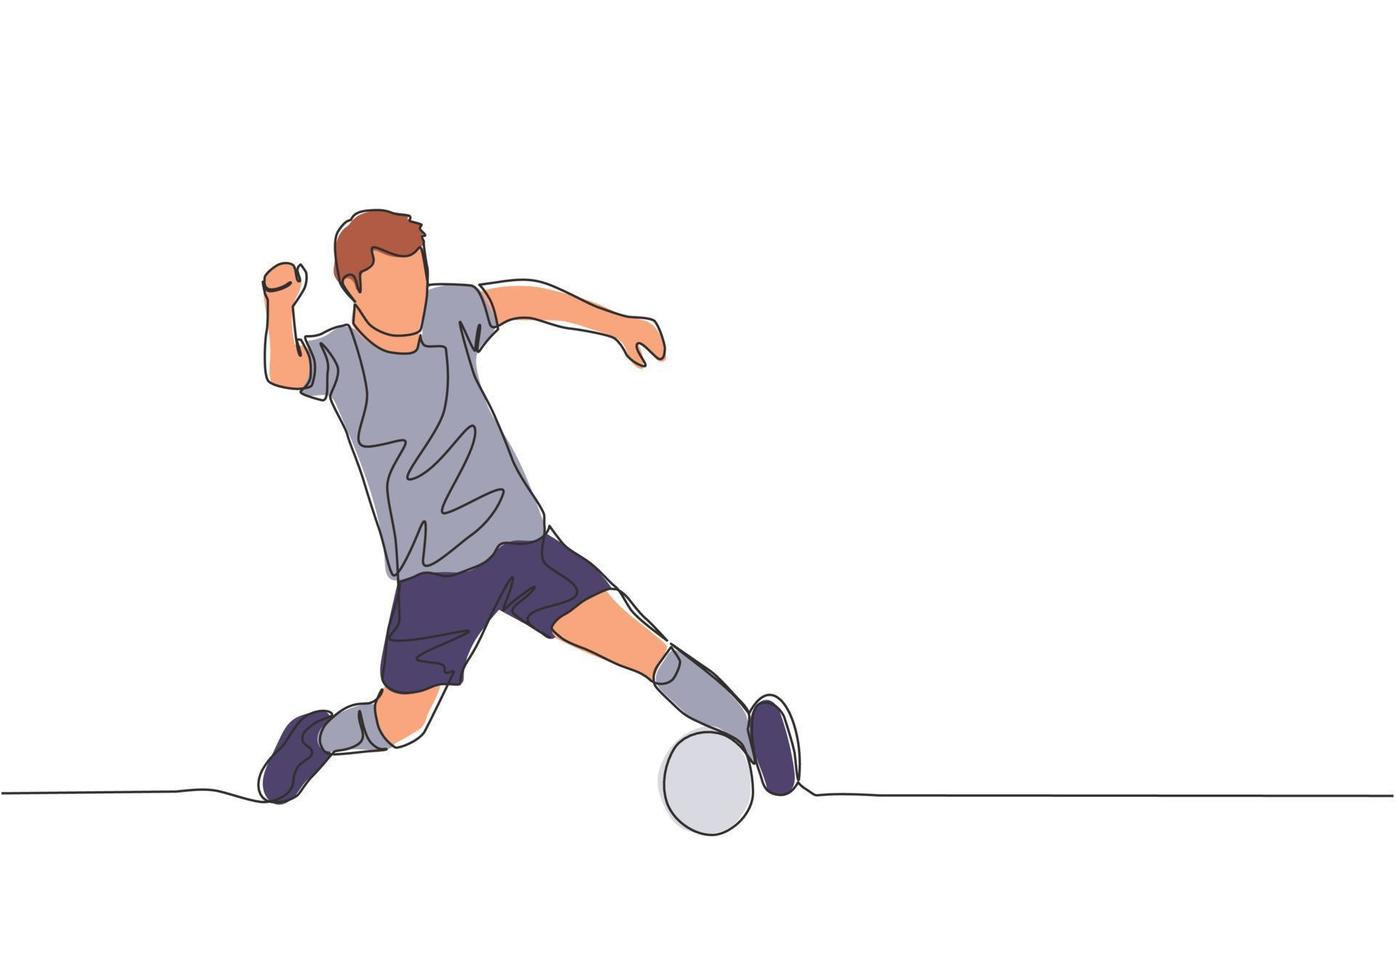 ett enda linje teckning av ung fotboll spelare med kort ärm skjorta Träning till kontrollera de boll. fotboll match sporter begrepp. kontinuerlig linje dra design vektor illustration